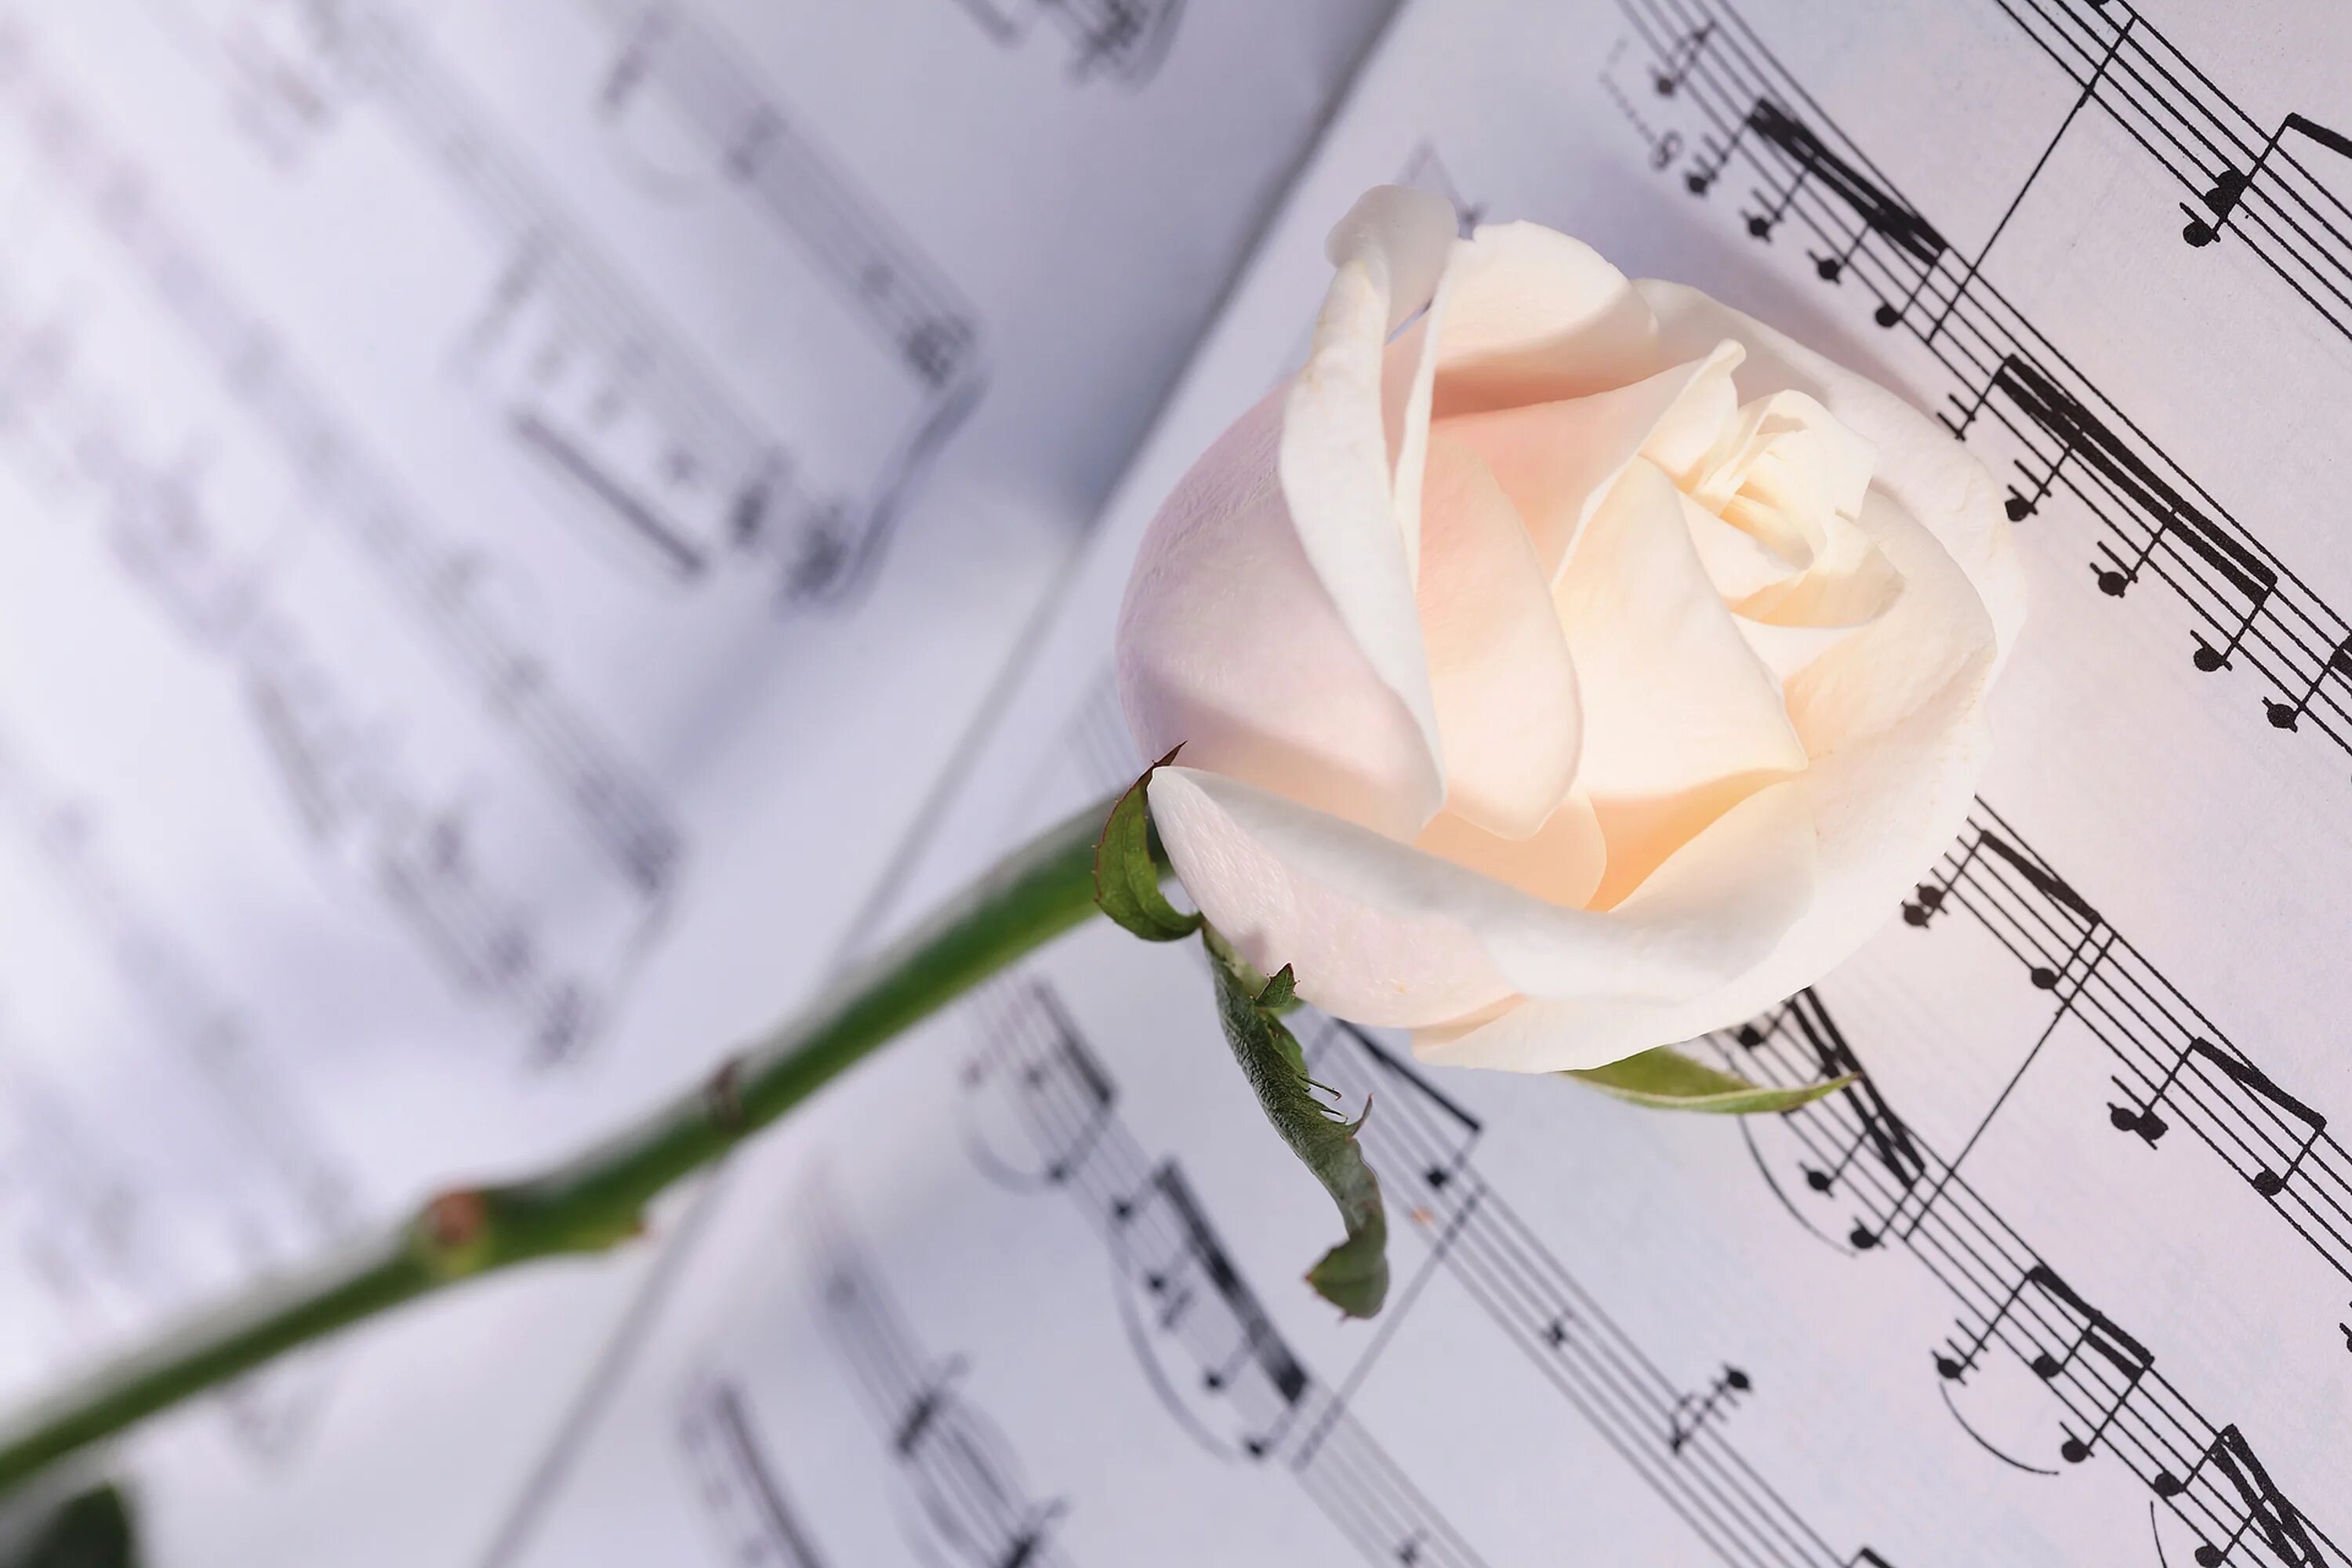 Слушать хорошие нежные песни. Ноты и цветы. Нежный цветок. Красивый фон с нотами и цветами. Белые розы.